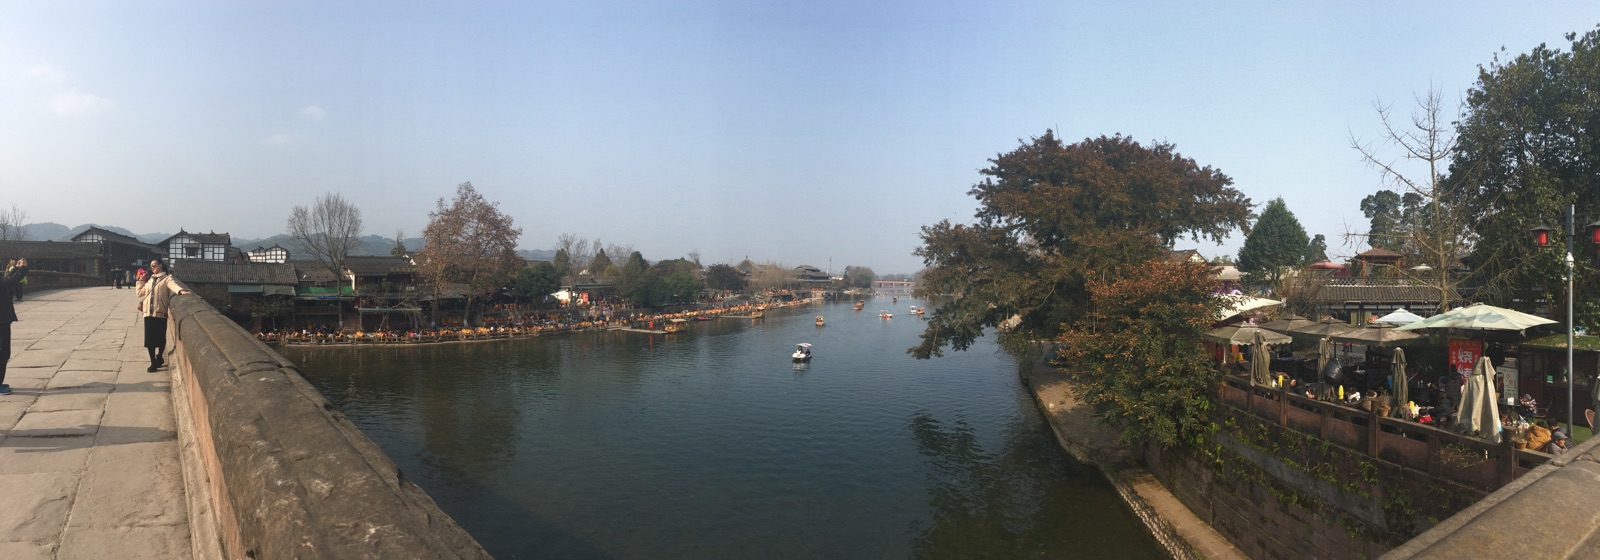 今天天气晴朗～平乐古镇的河边感觉不错～喝茶休息～